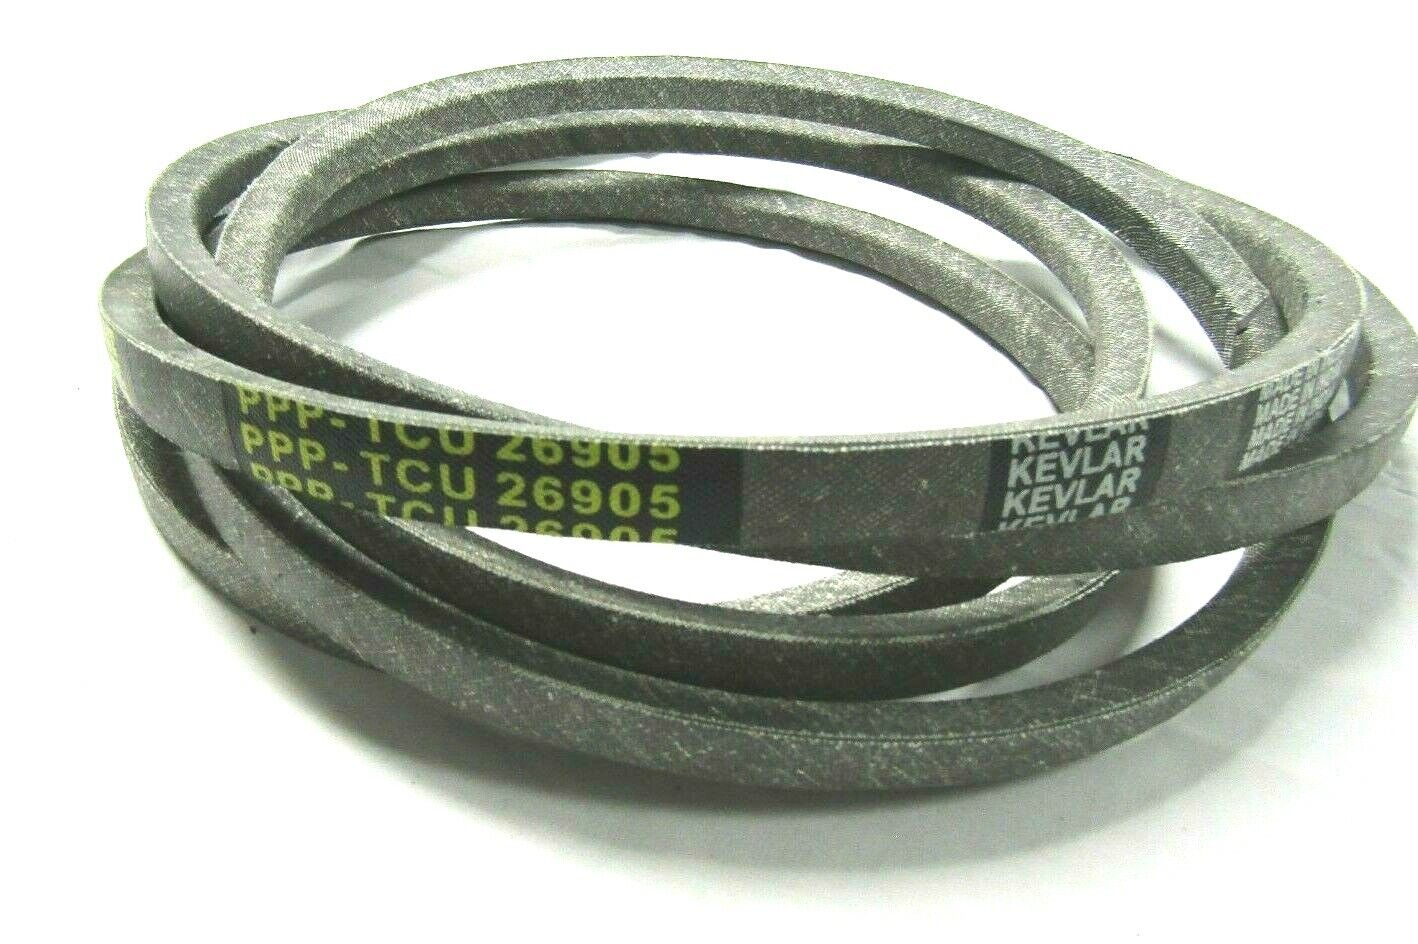 Spec made belt will fit JOHN DEERE Z520A TCU26905 ON 54" DECKS MADE WITH KEVLAR